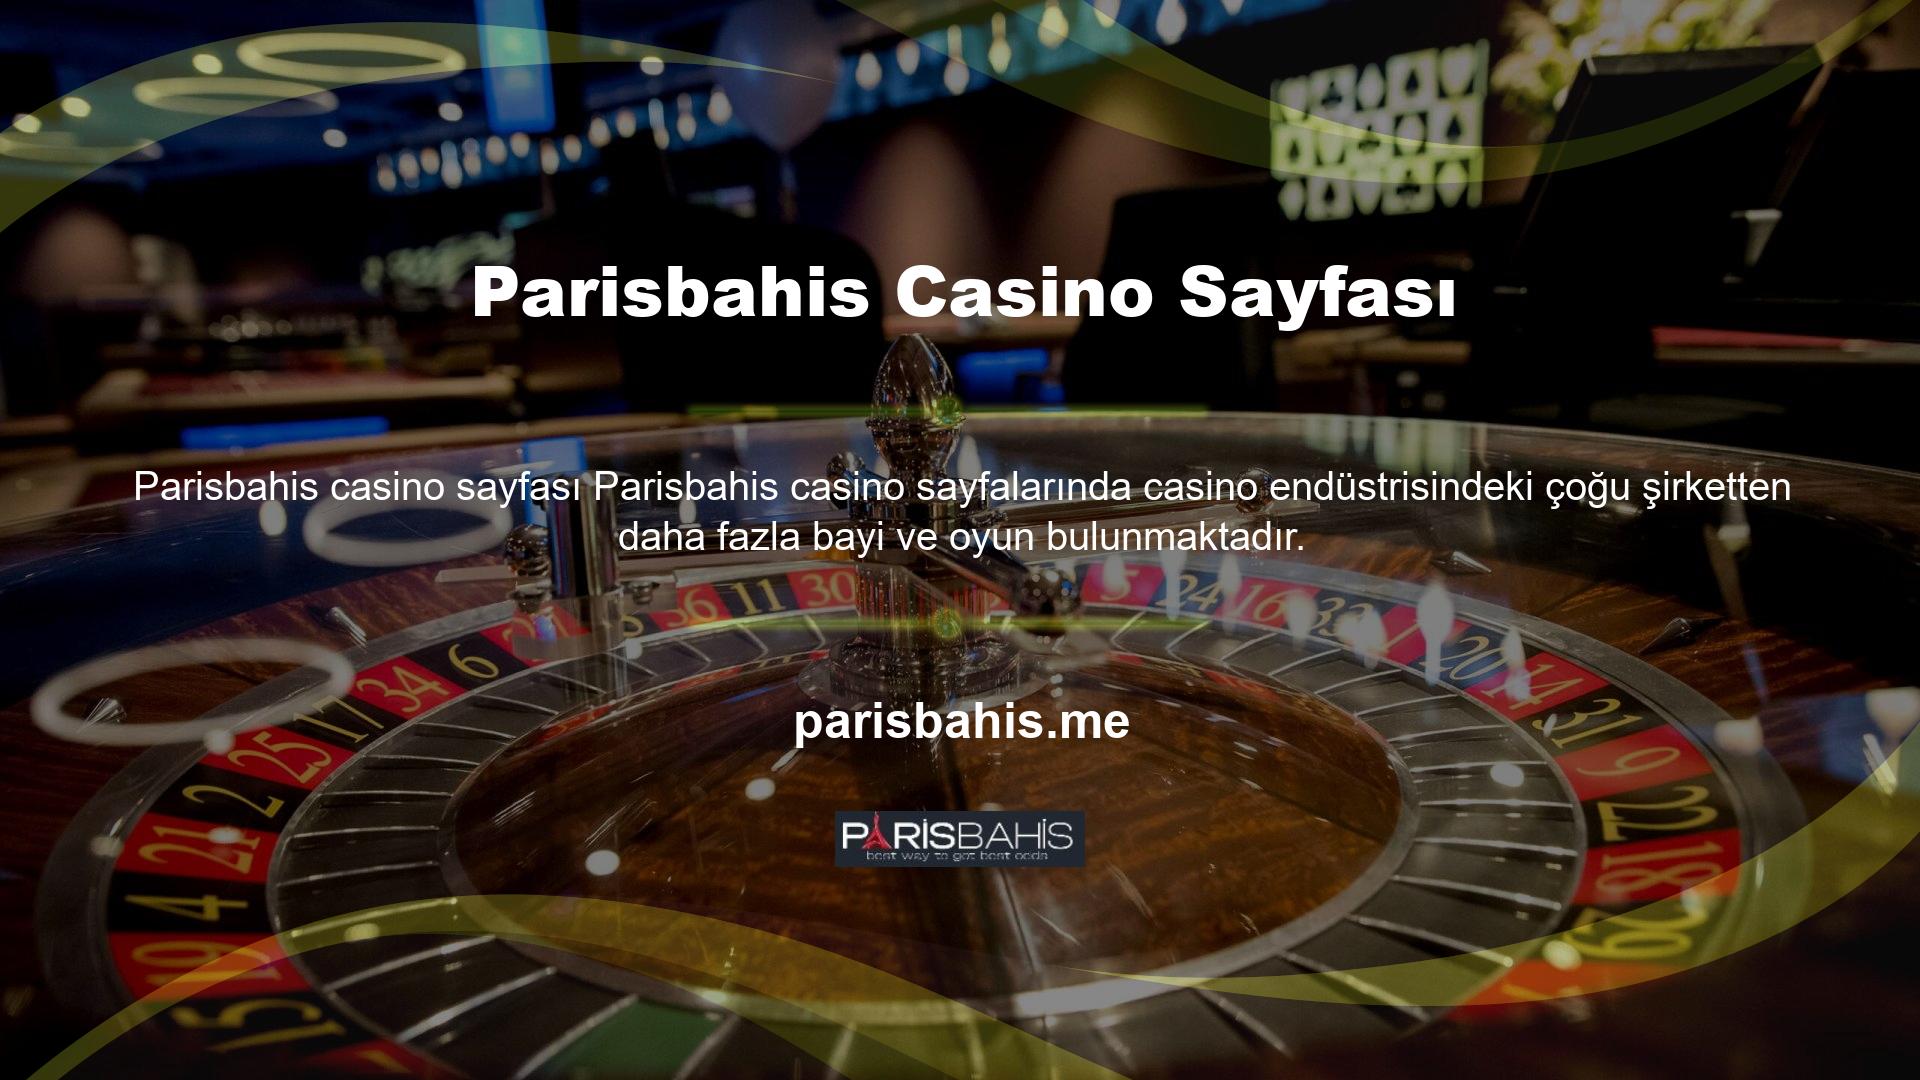 Canlı casino makalemizde açıklandığı gibi, casino sektöründe yasa dışı olan "casino" terimi, casino dışında, özellikle de slot makinelerinde casino oynamayı ifade etmektedir